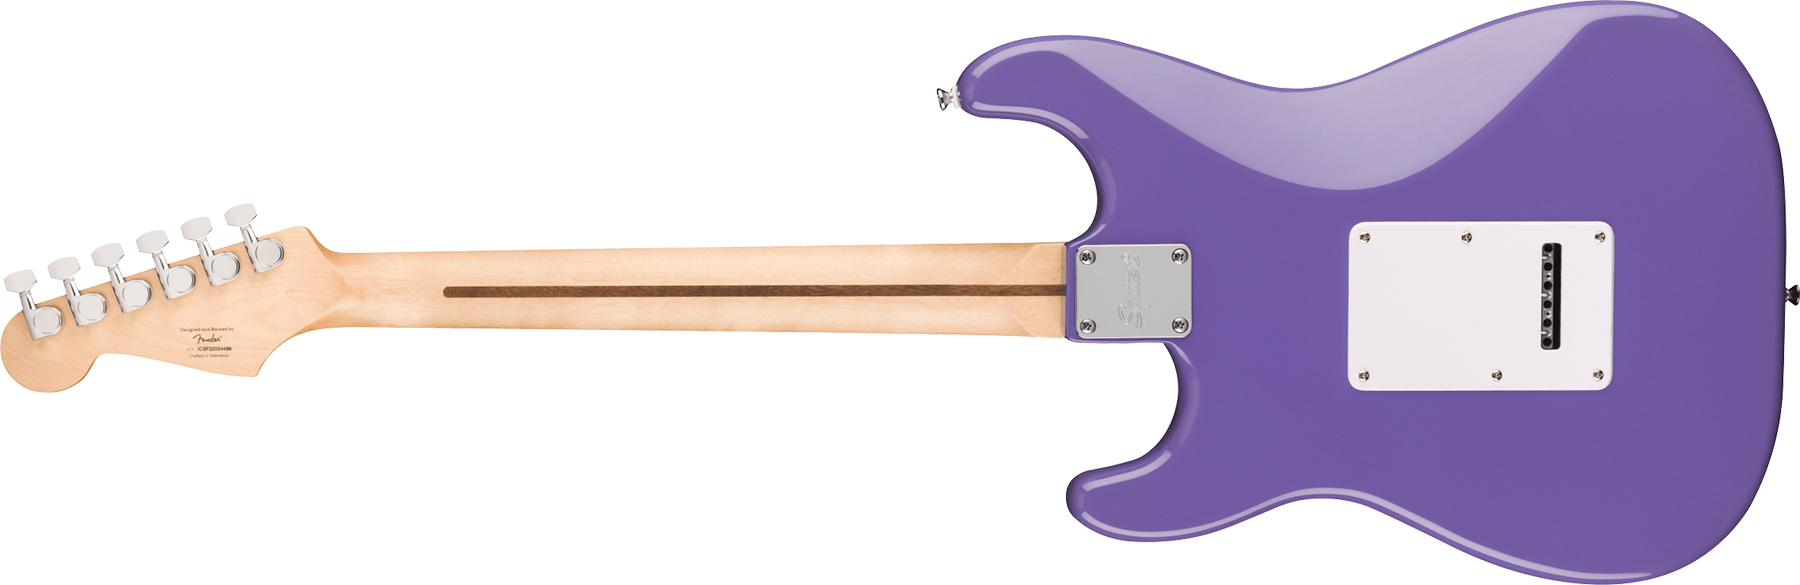 Squier Strat Sonic 3s Trem Lau - Ultraviolet - E-Gitarre in Str-Form - Variation 1